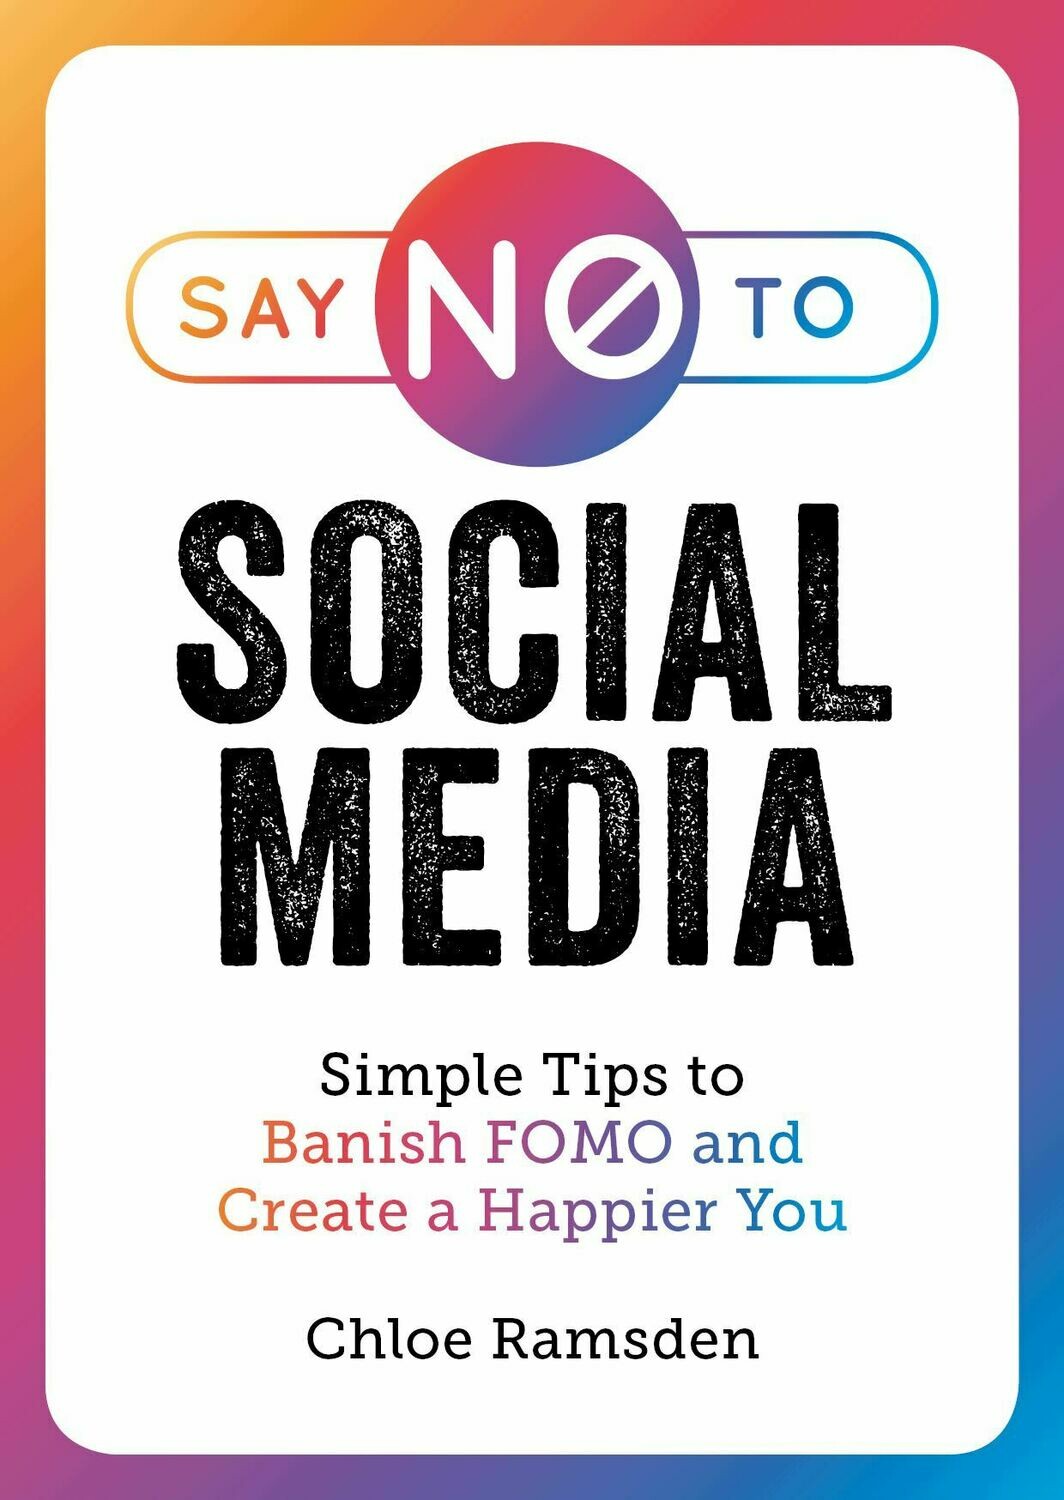 Say No To Social Media